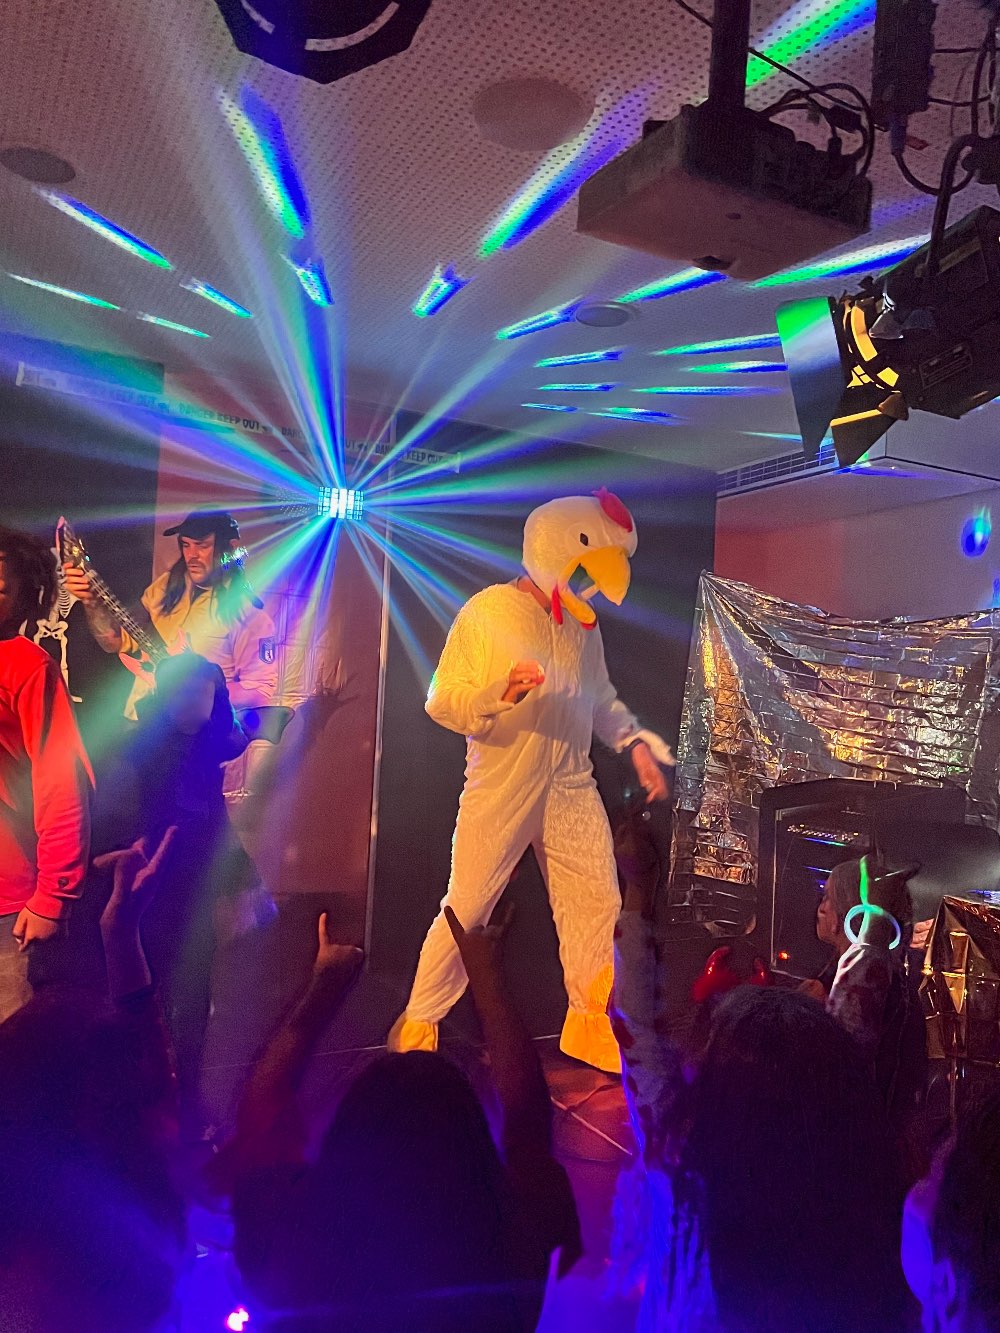 Eine als Huhn verkleidete Person tanzt auf der Bühne. Im Hintergrund sieht man blau-grün rotierende Lichter.